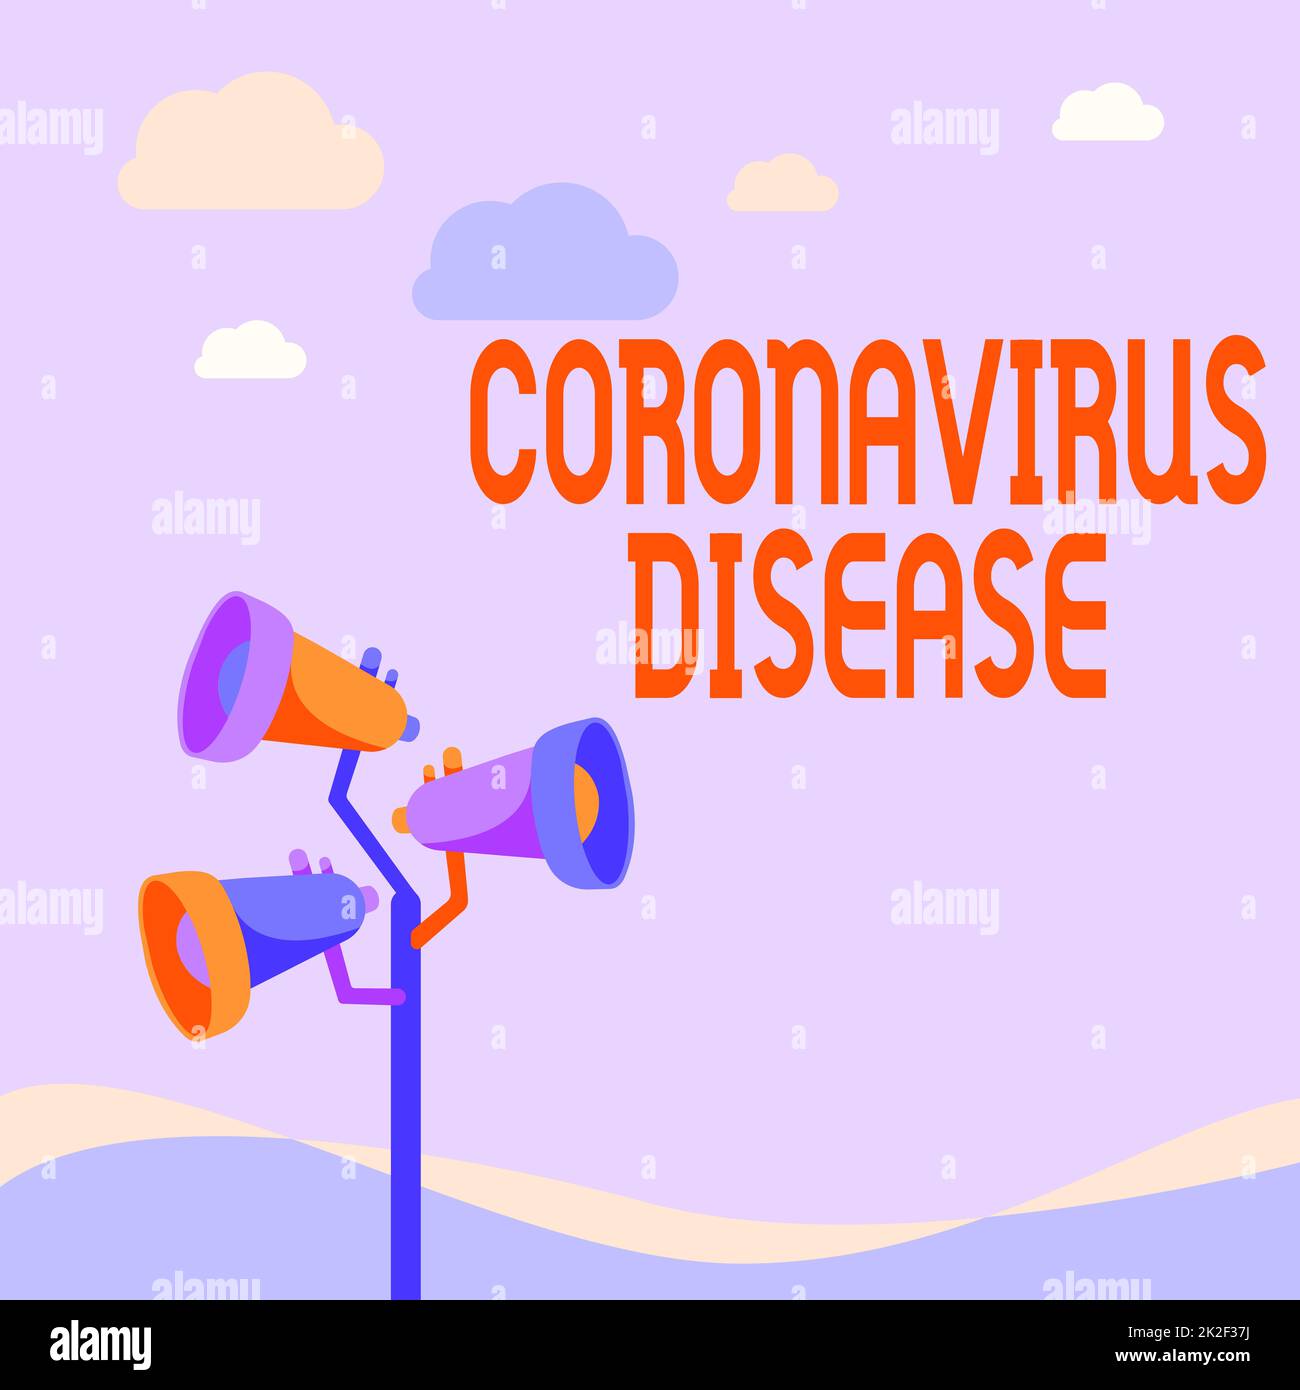 Affiche indiquant la maladie du coronavirus. Approche commerciale définie comme une maladie causée par un nouveau virus SARSCoV2 pôles mégaphones dessin faire une annonce à un espace ouvert. Banque D'Images